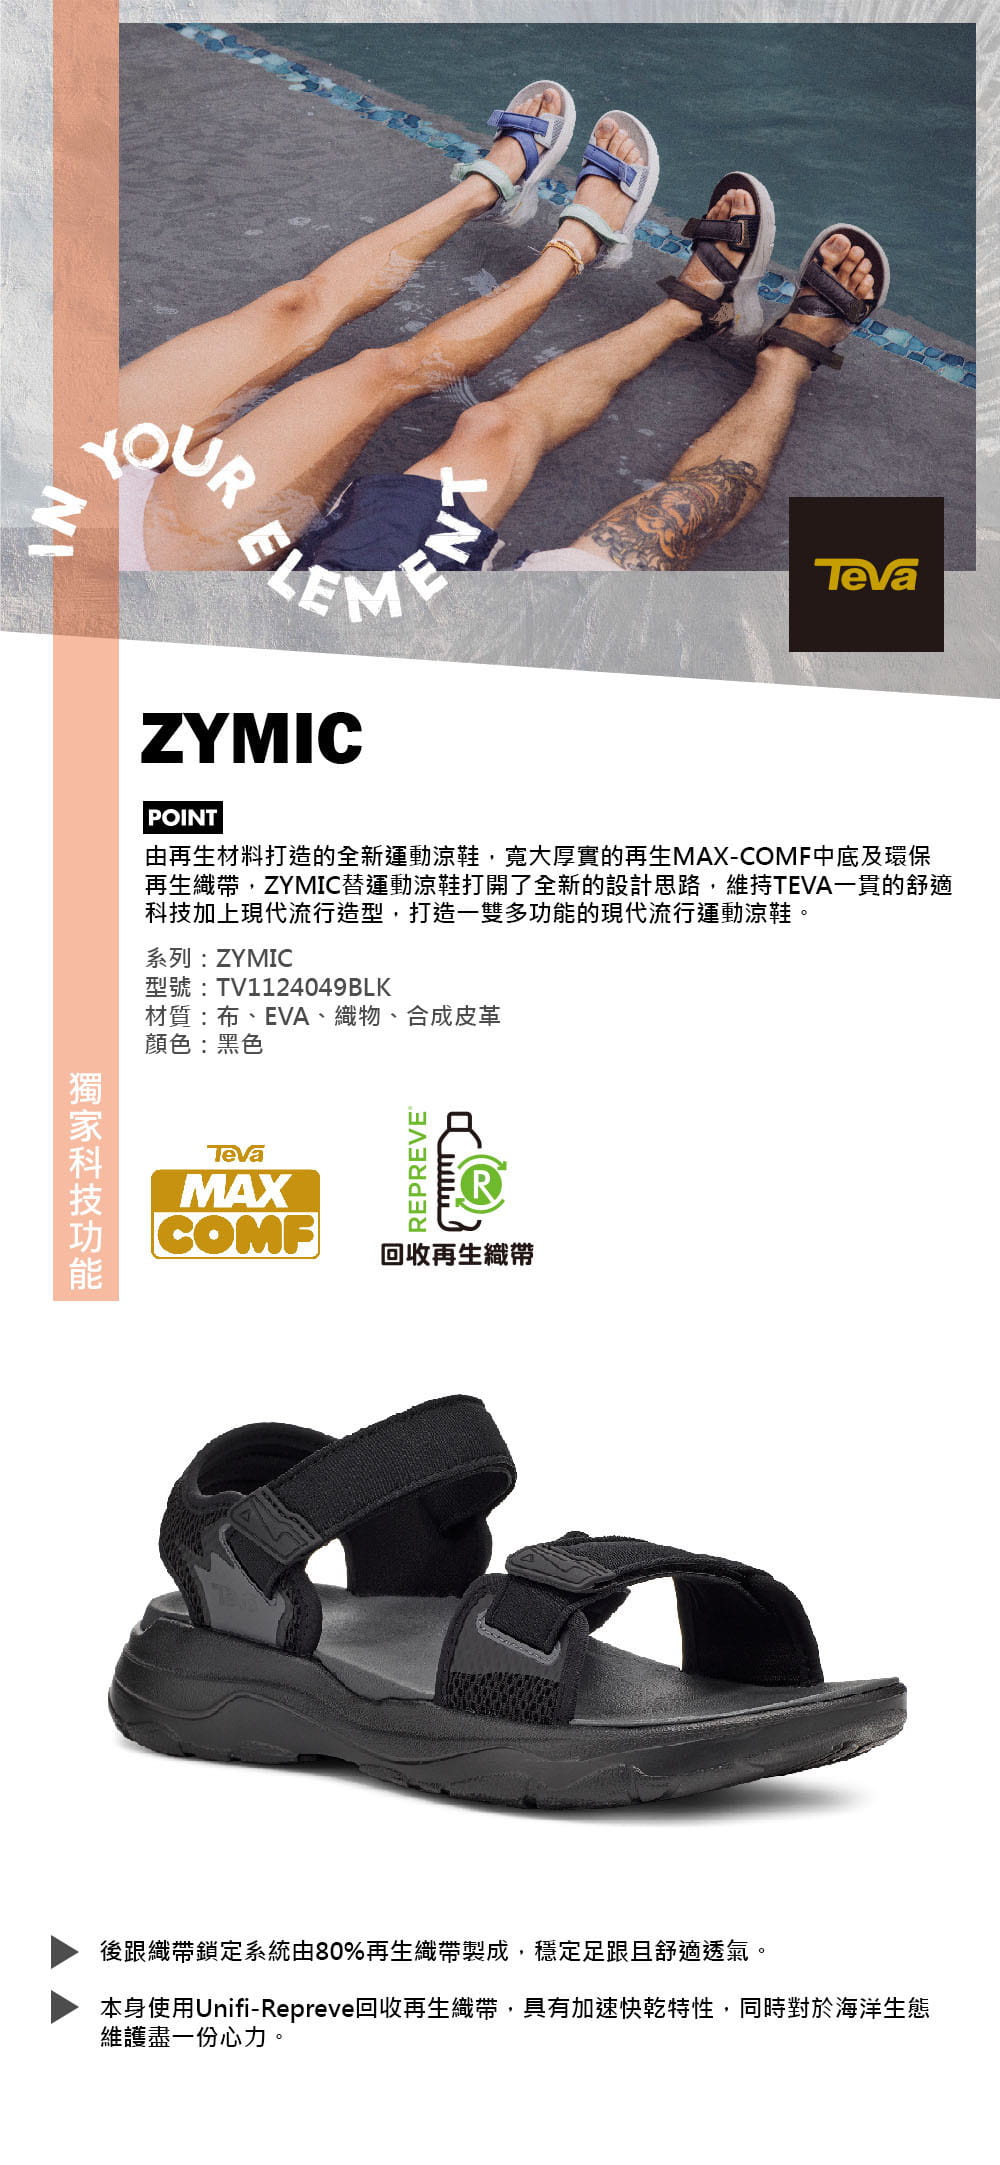 (登山屋)TEVA男 Zymic 多功能運動科技涼鞋/雨鞋/水鞋(黑色-TV1124049BLK) 6